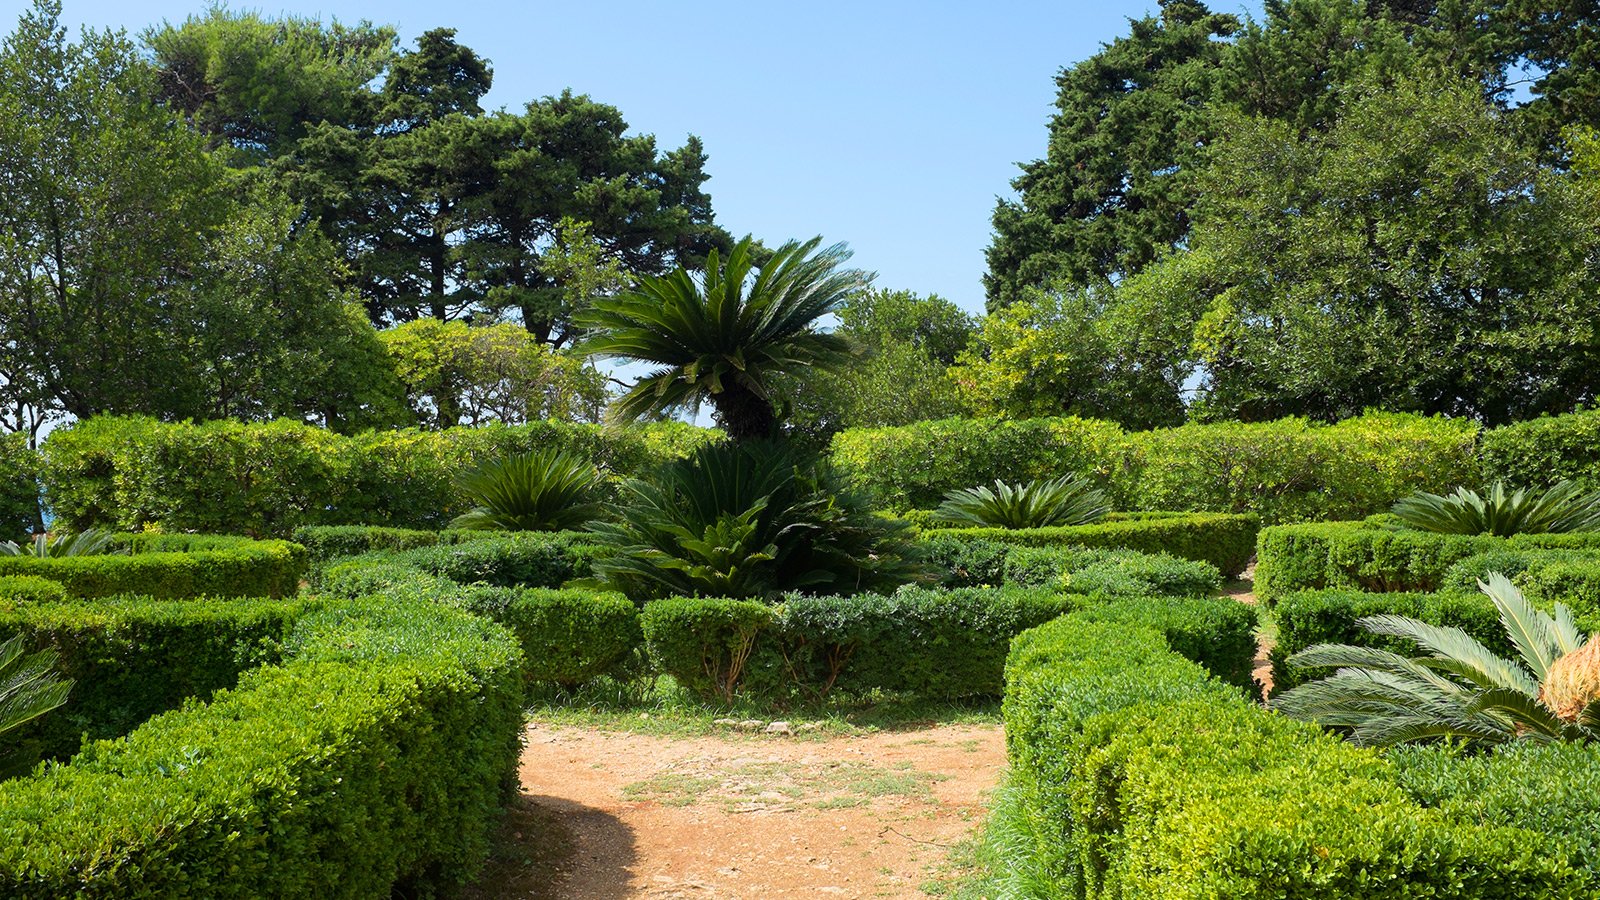 Ботанический сад, Дубровник